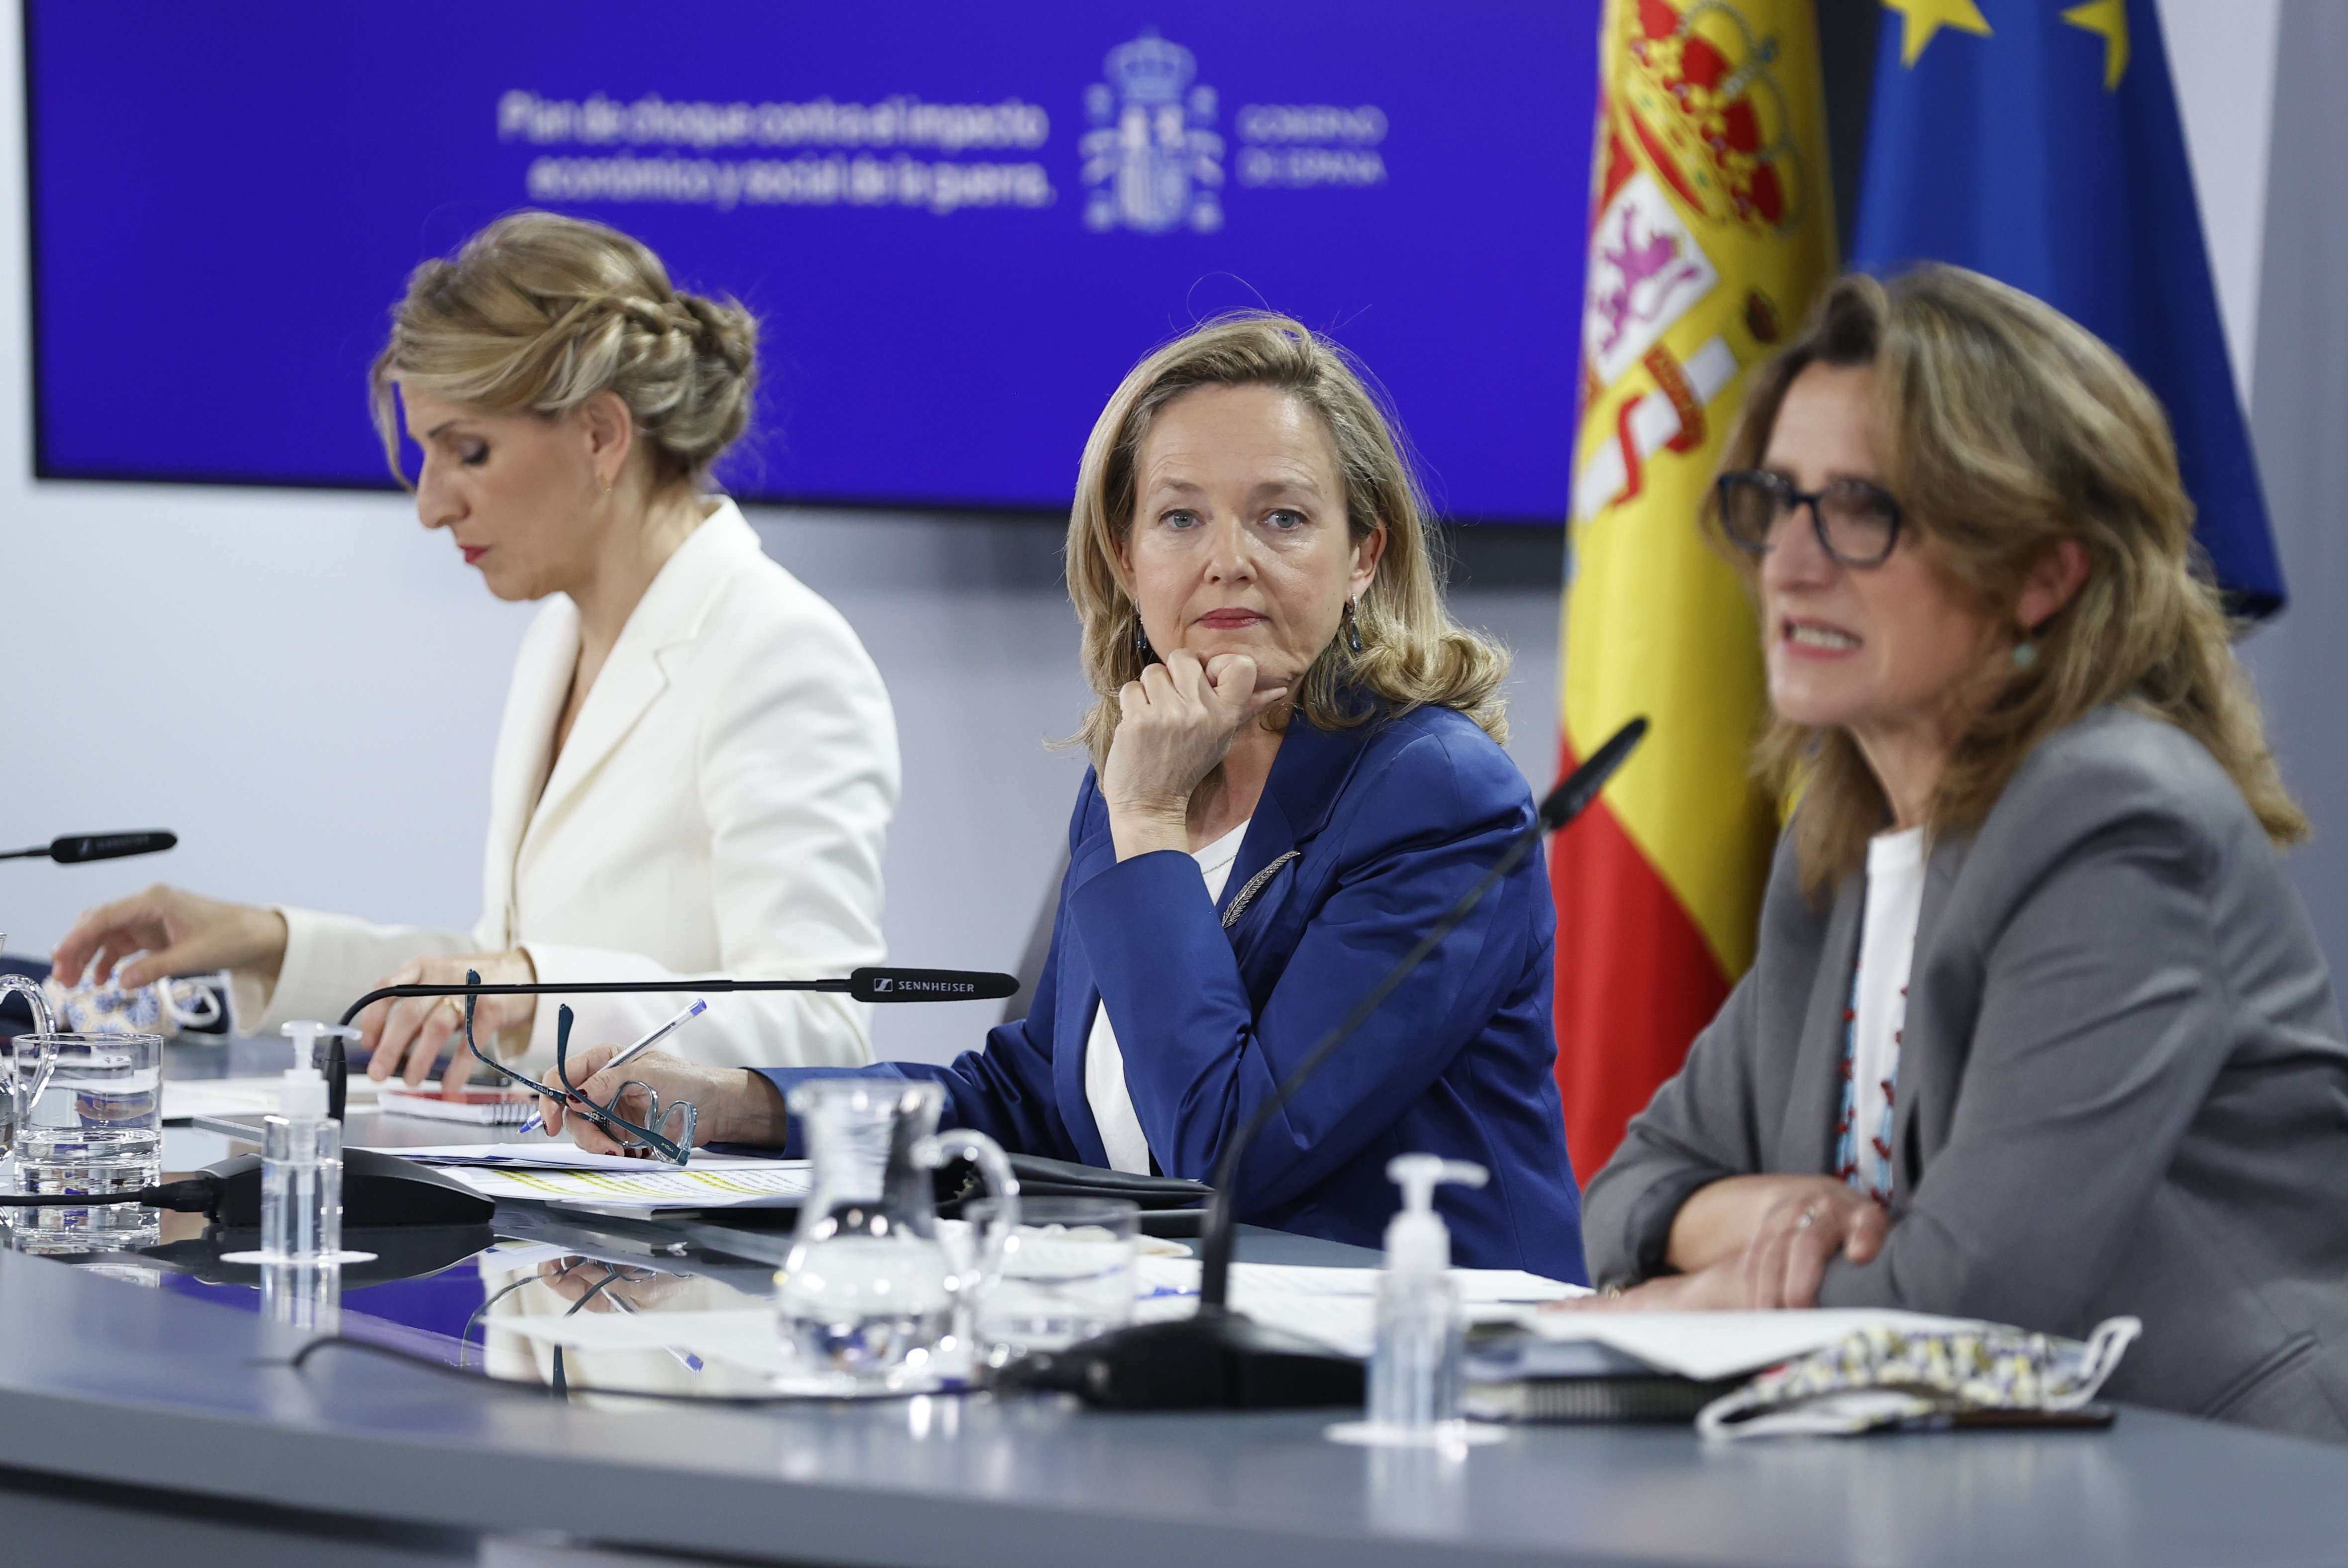 El govern espanyol reclama "unanimitat" pel seu decret anticrisi